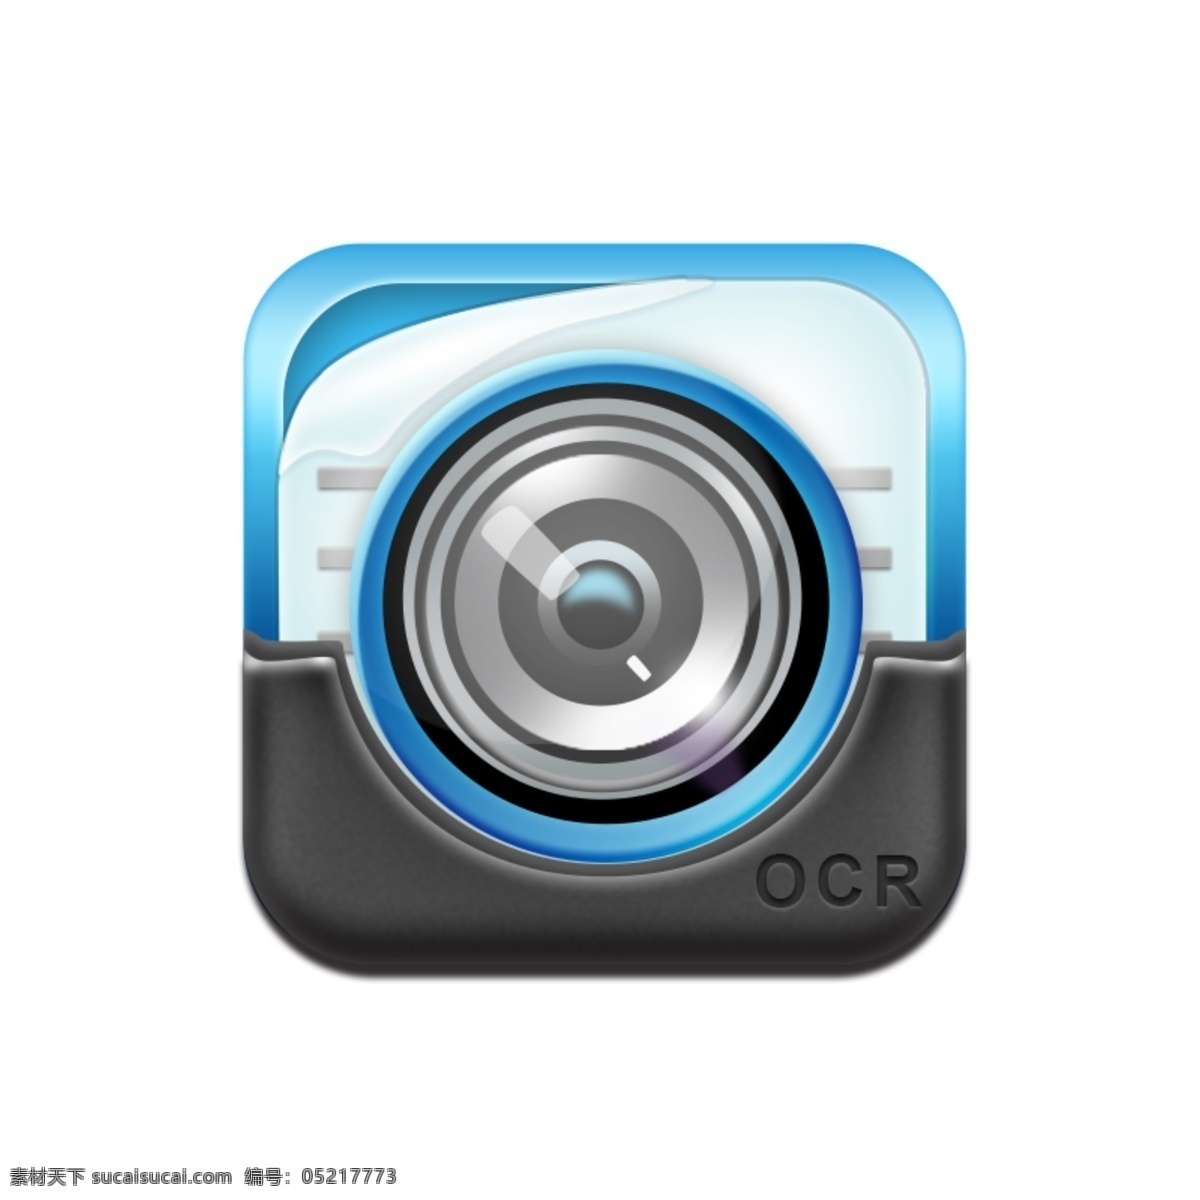 蓝色 精美 相机 icon 图标 相机icon 相机图标 精美图标 照相机图标 照相机 相机镜头图标 相机镜头